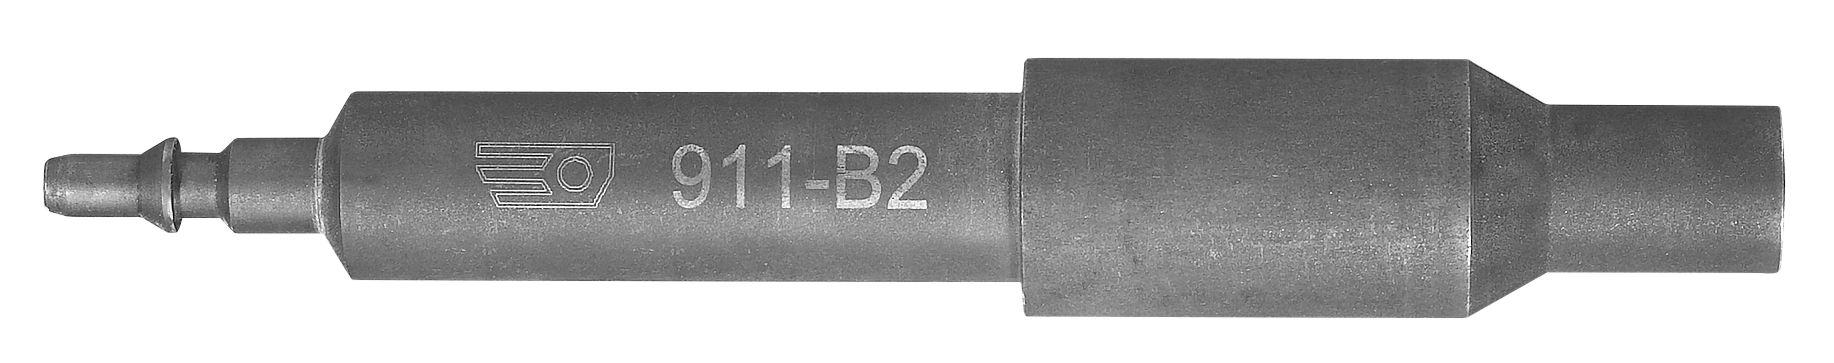 1.911-B2 Dummy injector